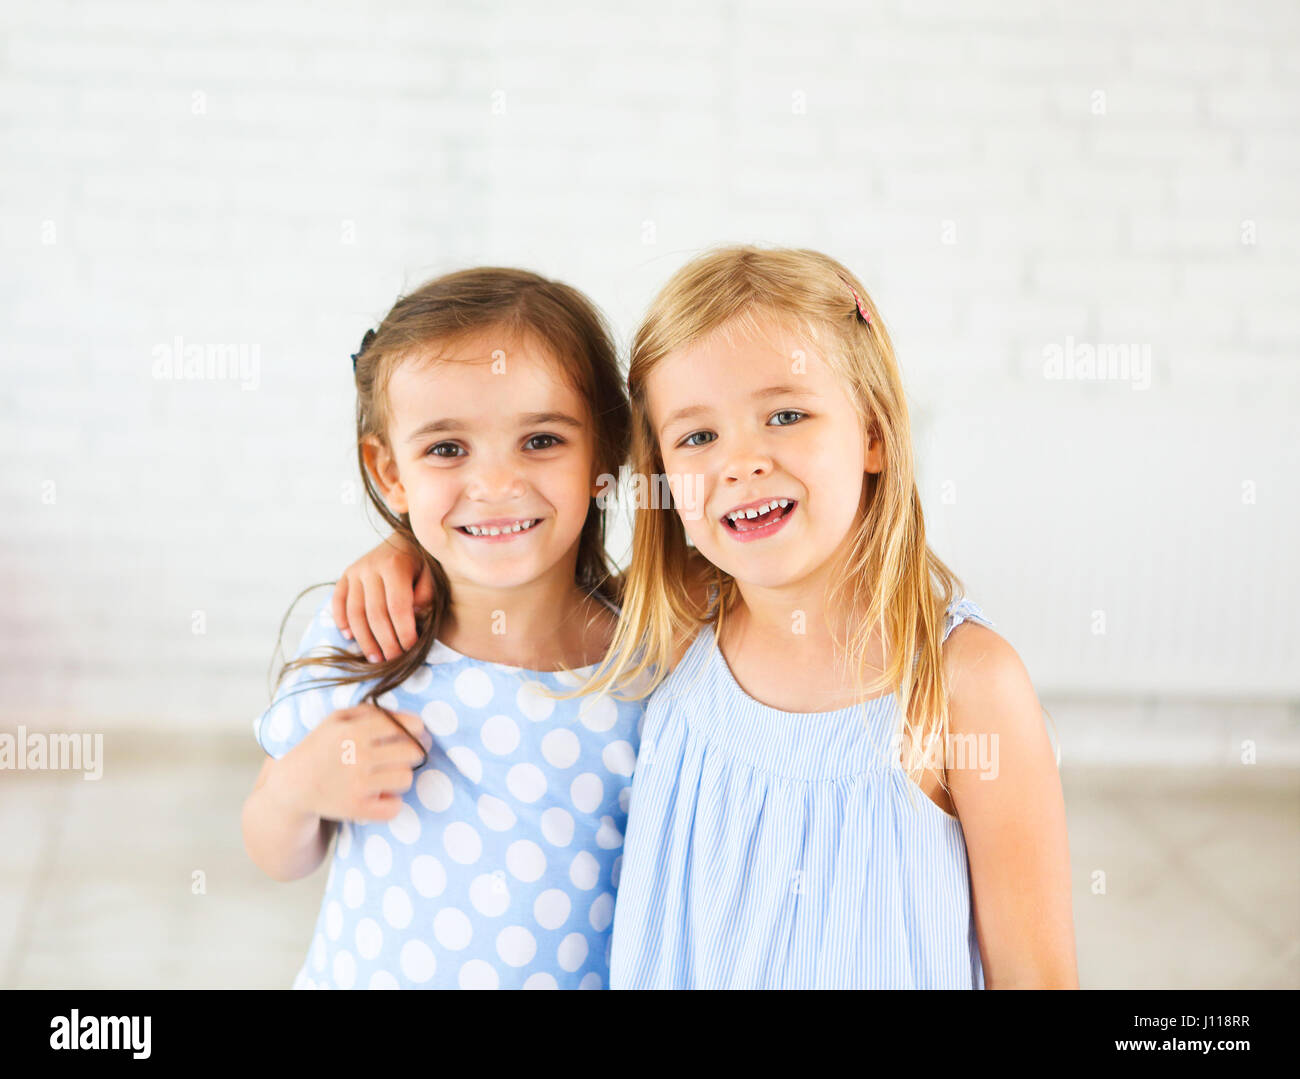 Portrait de deux happy smiling jeunes filles. Concept d'amitié Banque D'Images